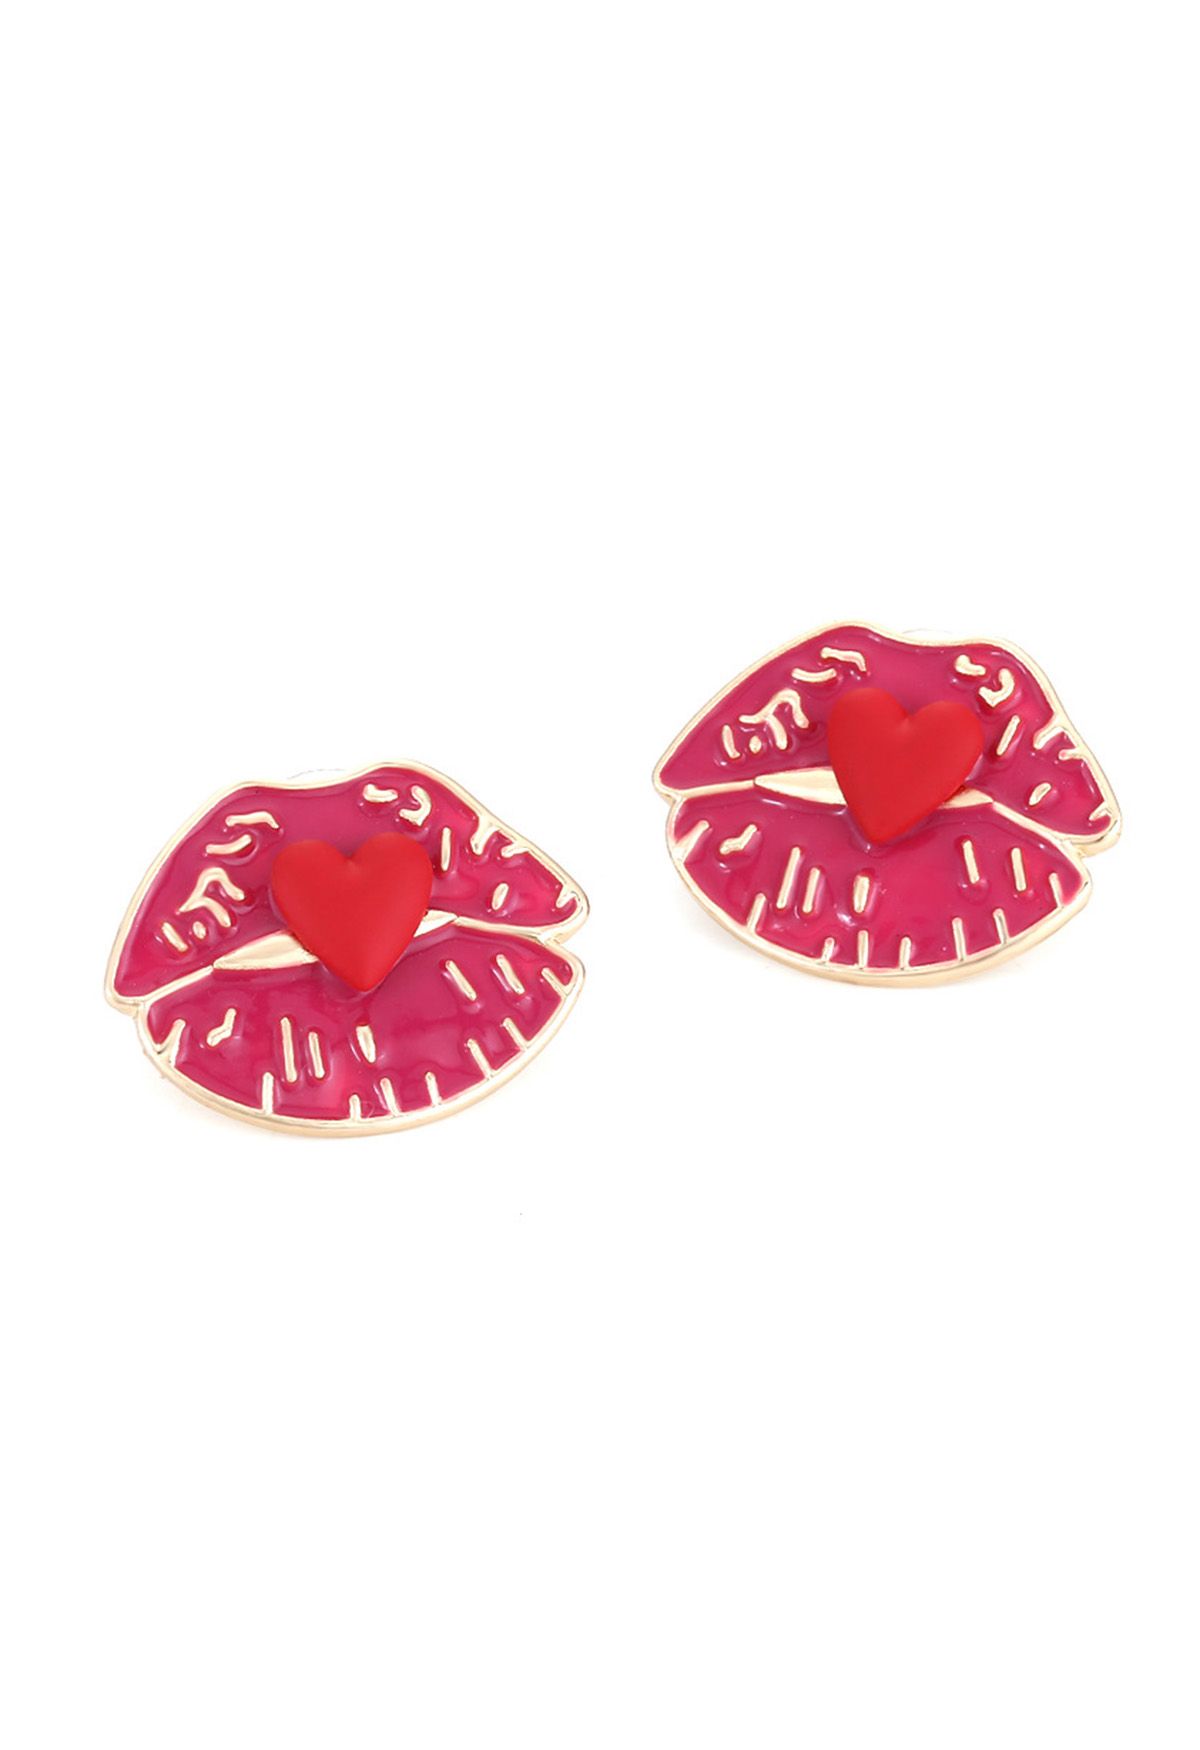 Flaming Lip Heart Earrings in Red